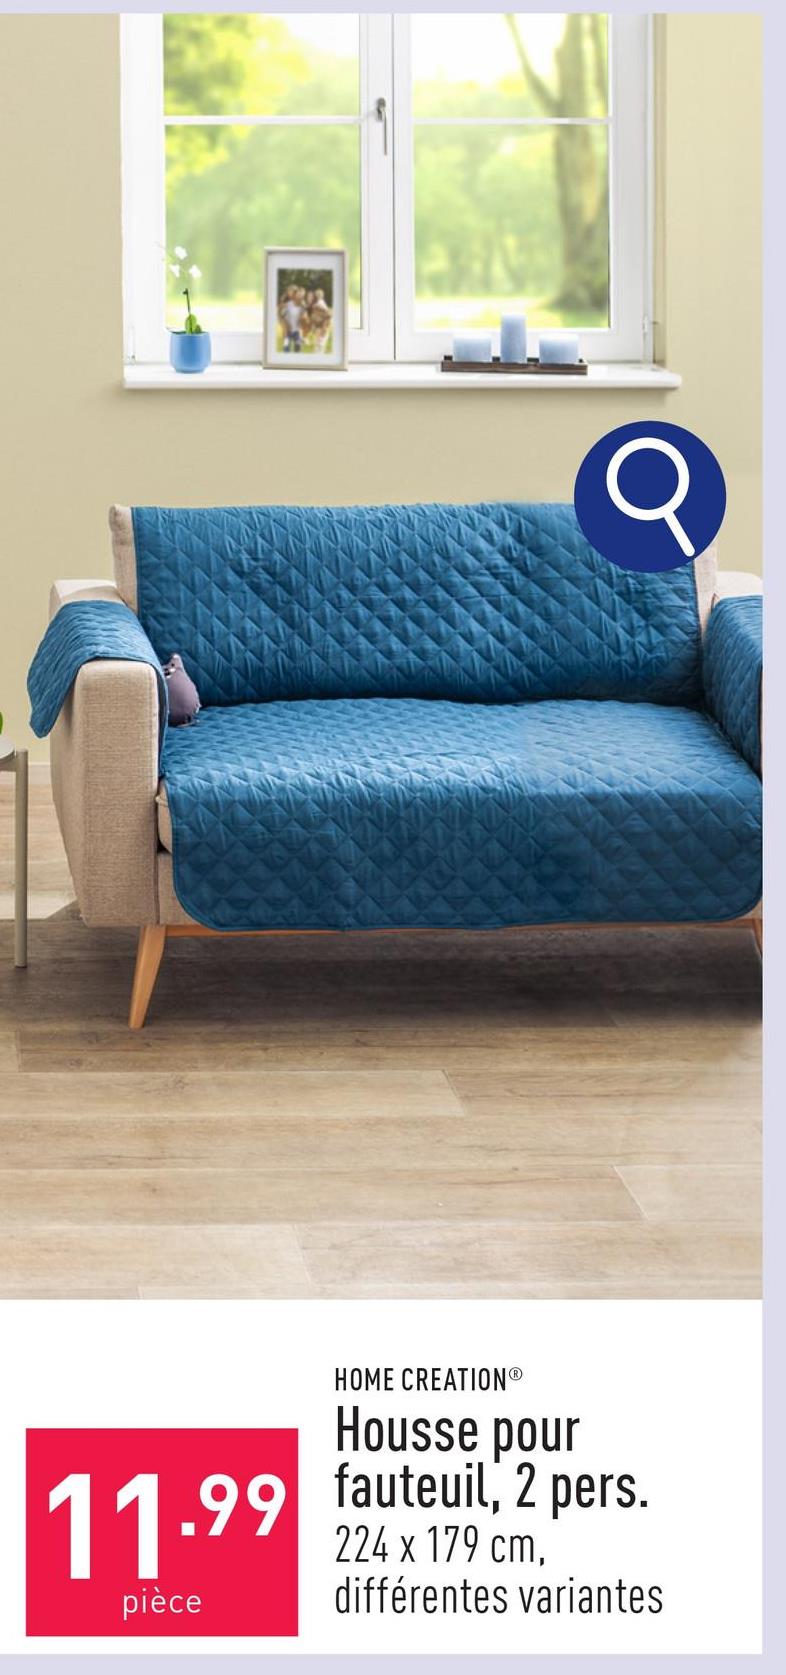 Housse pour fauteuil, 2 pers. dessus et rembourrage en polyester, dessous en polypropylène, env. 224 x 179 cm, choix entre différentes variantes, certifiée OEKO-TEX®